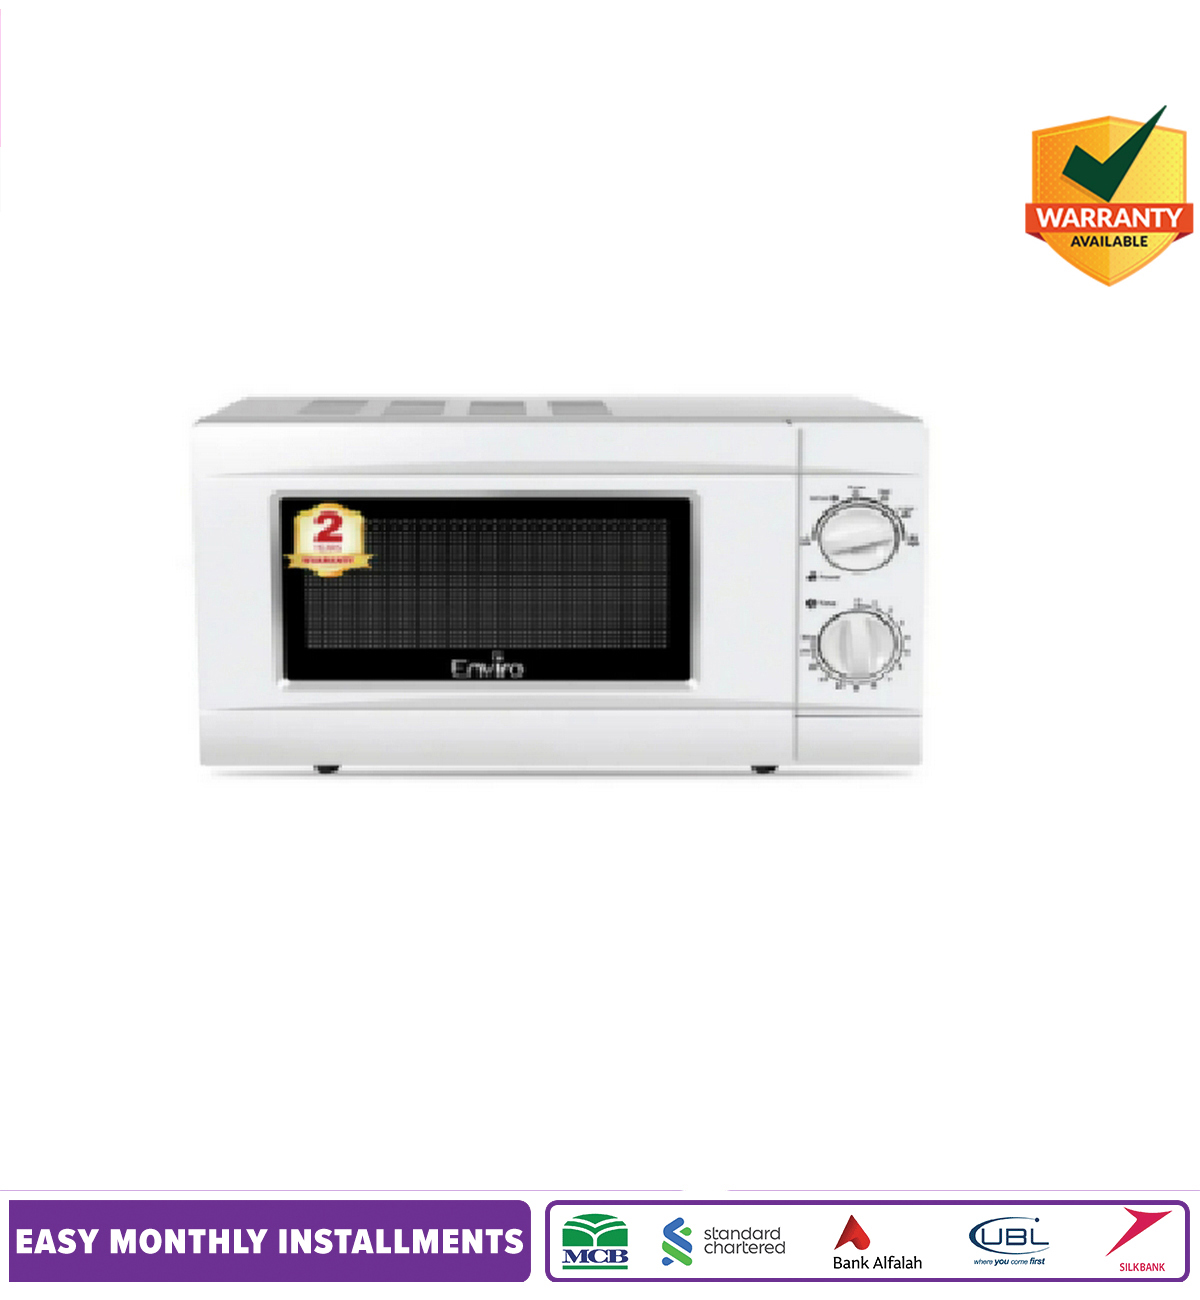 Enviro Microwave Oven 20 Liter - Enr 20xm2 (new Model)